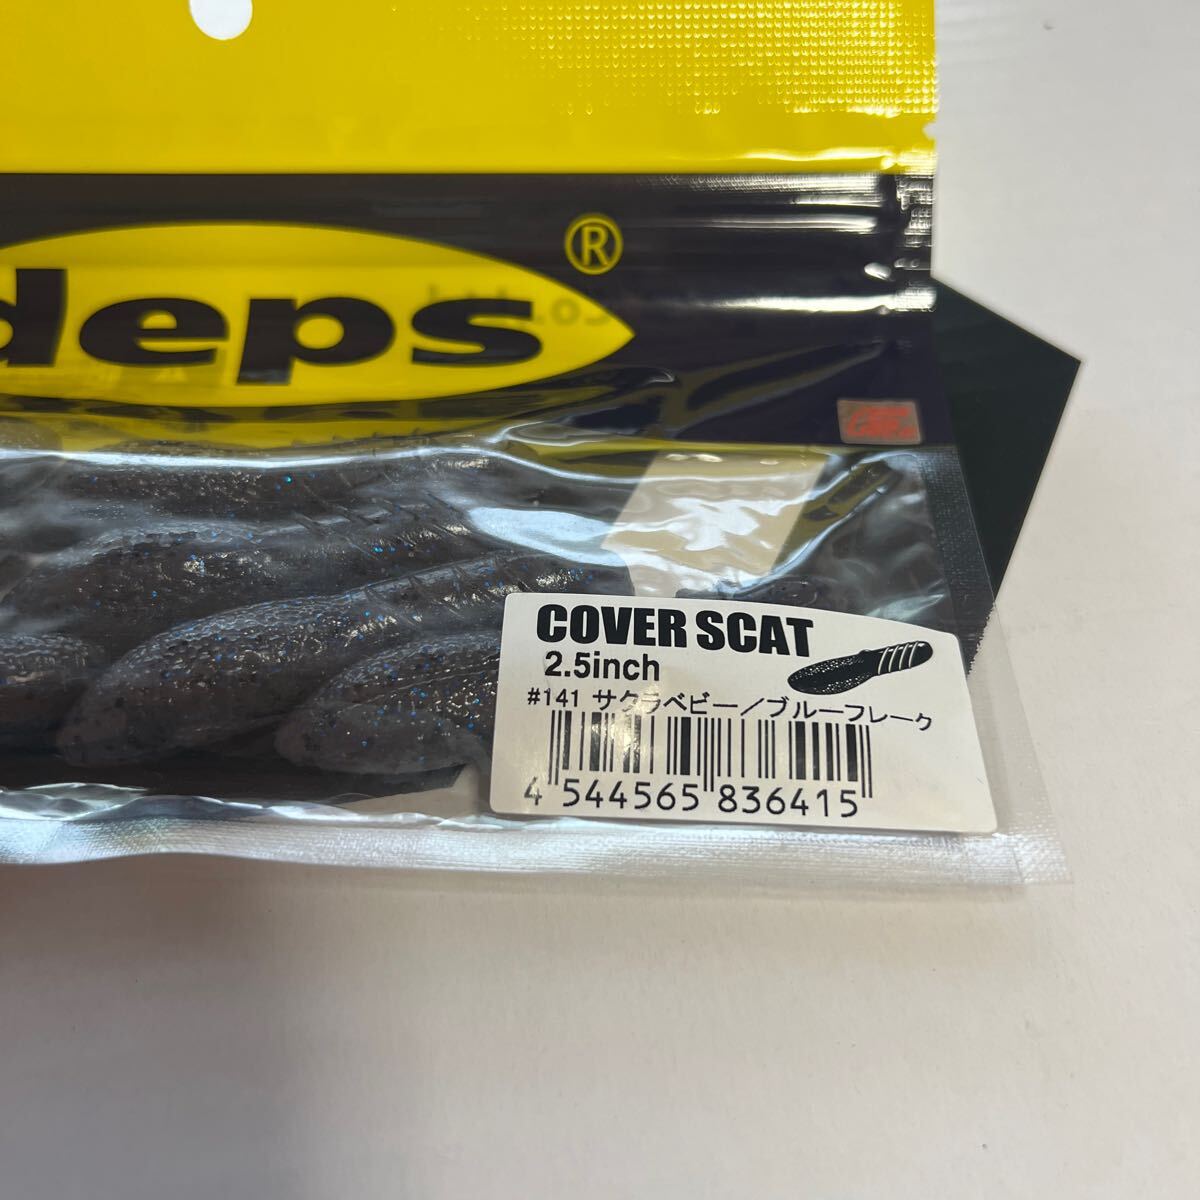 デプス カバースキャット 2.5 インチ サクラベビー /ブルーフレーク 新品未使用 deps COVER SCAT DEPS ②の画像2